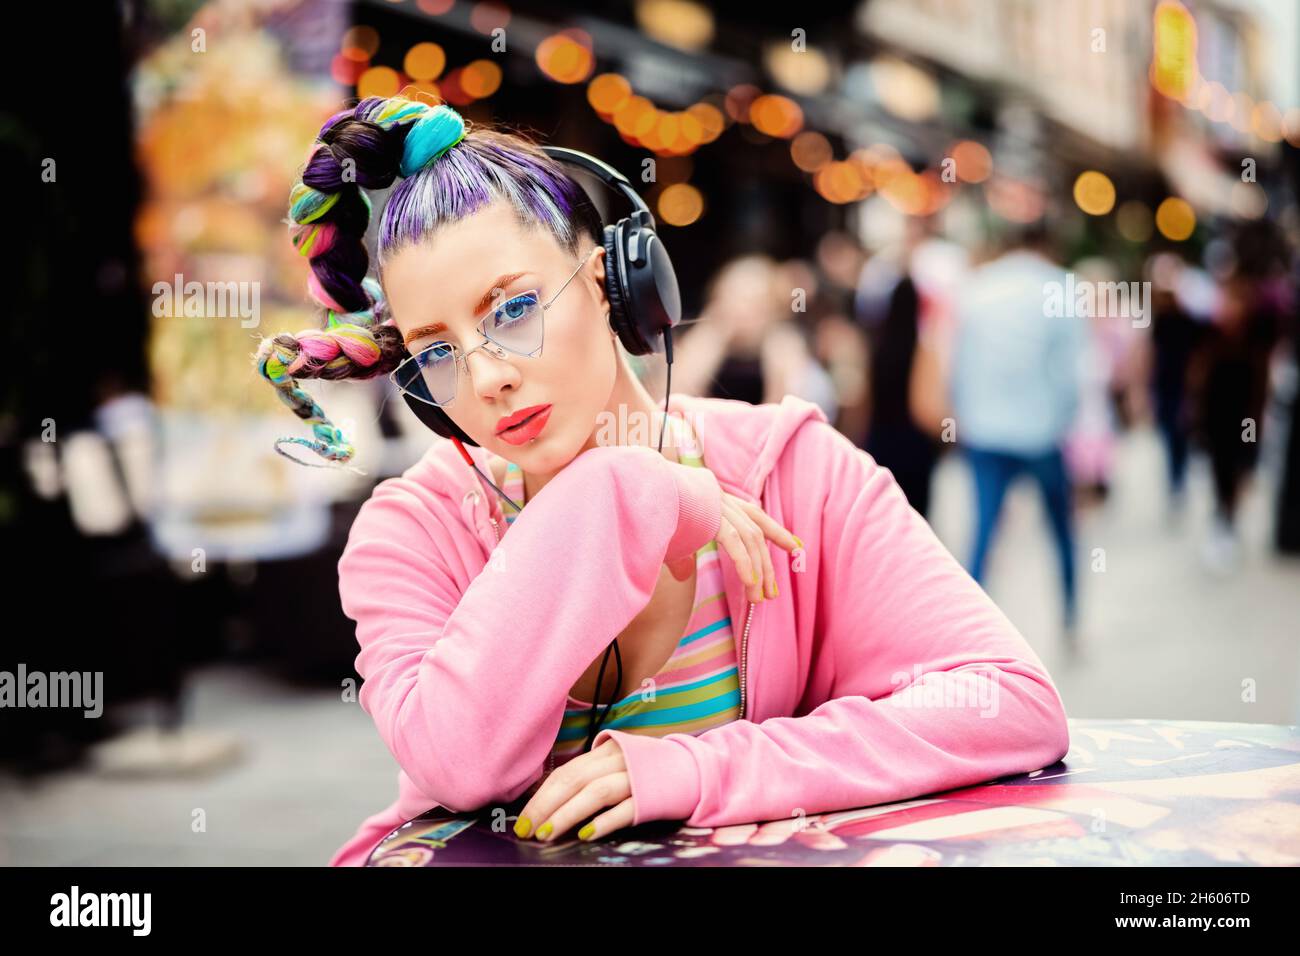 Coole, flippige Hipster junge Frau mit Piercings und trendigen Sonnenbrillen, die Musik auf Kopfhörern im Freien hören - verrückter Look und Haare Stockfoto